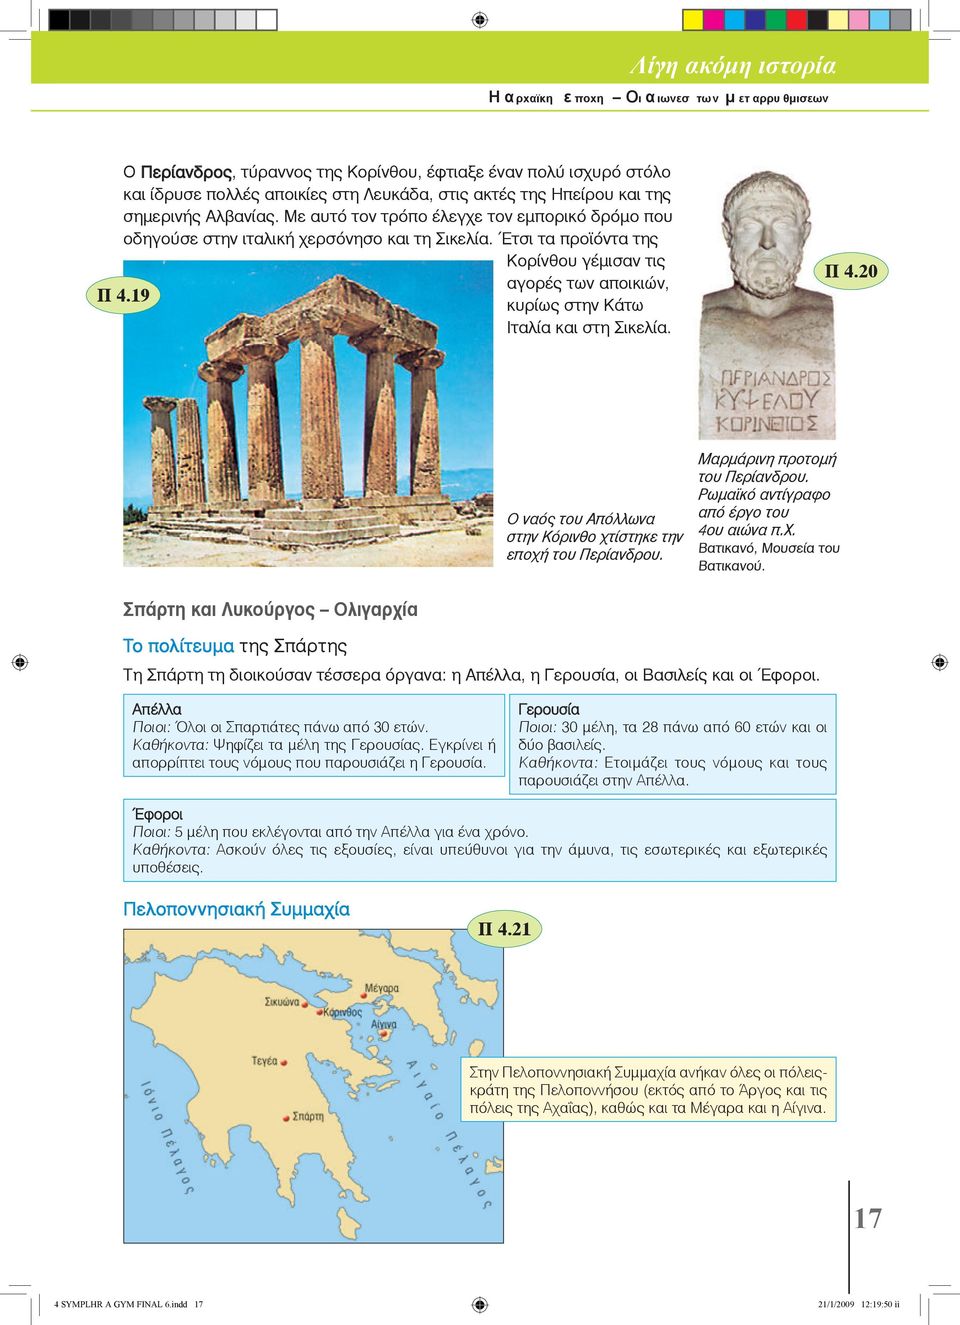 19 κυρίως στην Κάτω Ιταλία και στη Σικελία. Ο ναός του Απόλλωνα στην Κόρινθο χτίστηκε την εποχή του Περίανδρου. Π 4.20 Μαρμάρινη προτομή του Περίανδρου. Ρωμαϊκό αντίγραφο από έργο του 4ου αιώνα π.χ. Βατικανό, Μουσεία του Βατικανού.